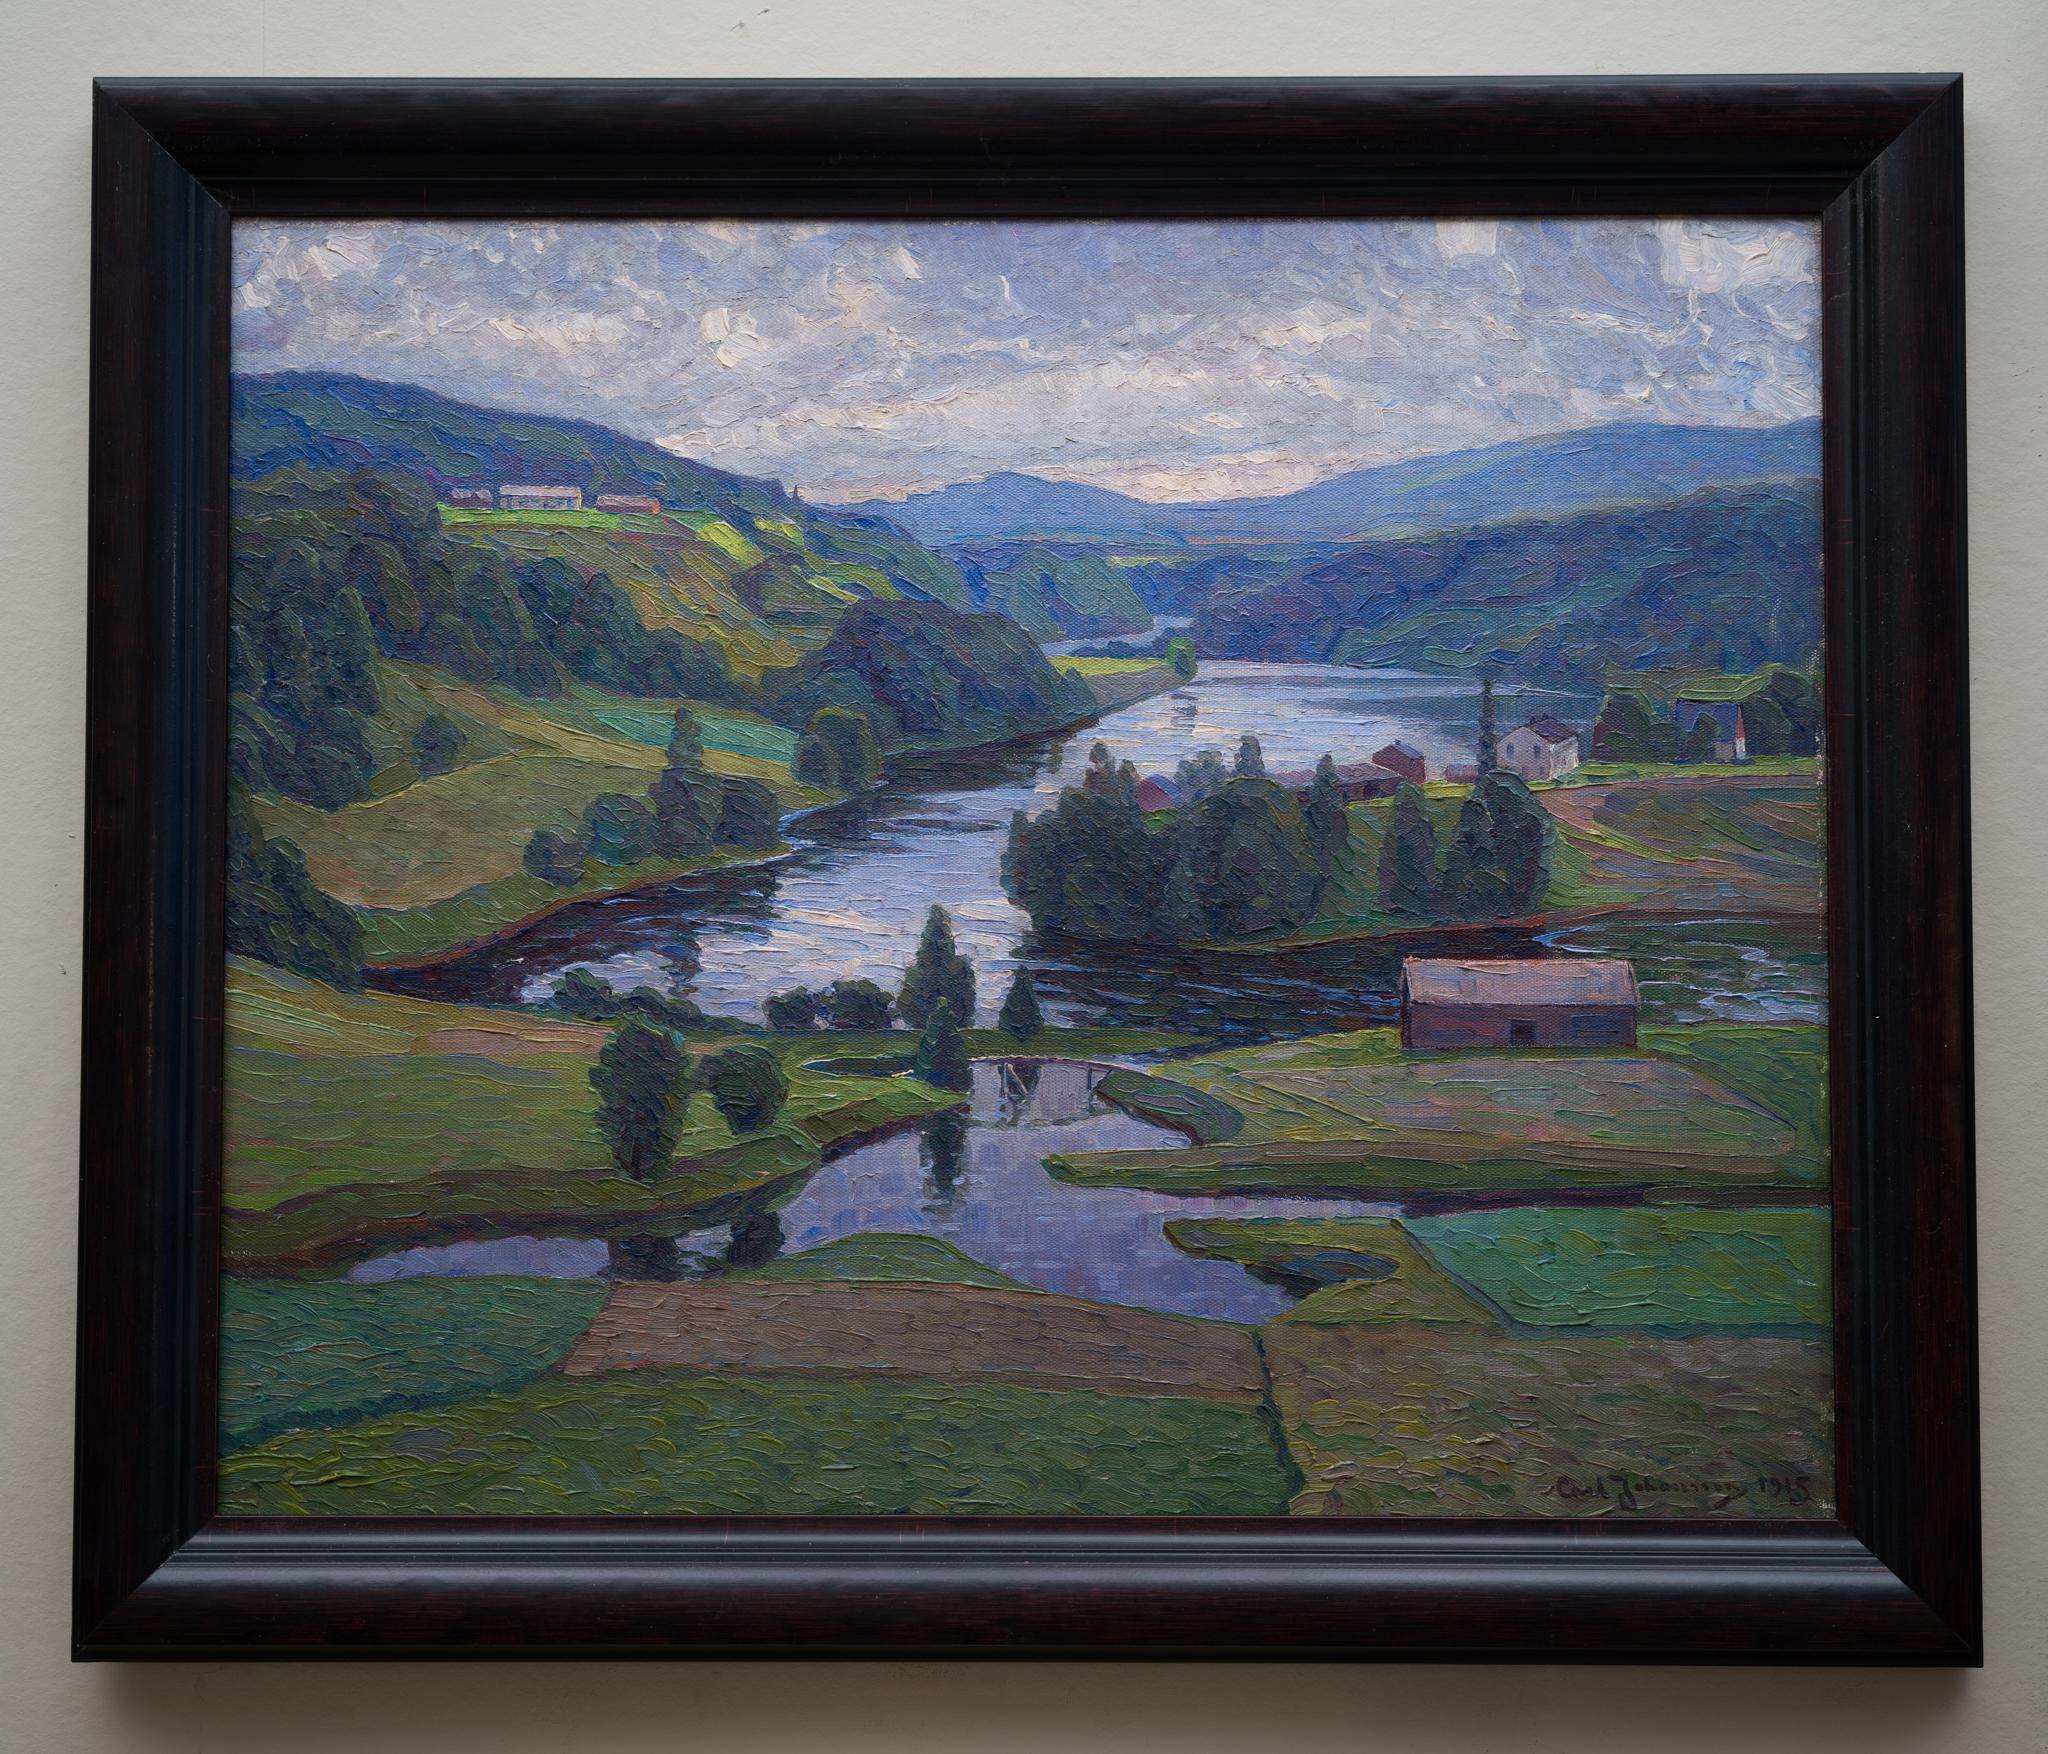 Nous avons le plaisir de présenter un magnifique paysage de Carl Johansson (1863-1944), une œuvre qui met en valeur le paysage époustouflant de Nordingrå, qui fait partie de la Haute Côte en Suède. Cette région, connue pour sa géologie unique et